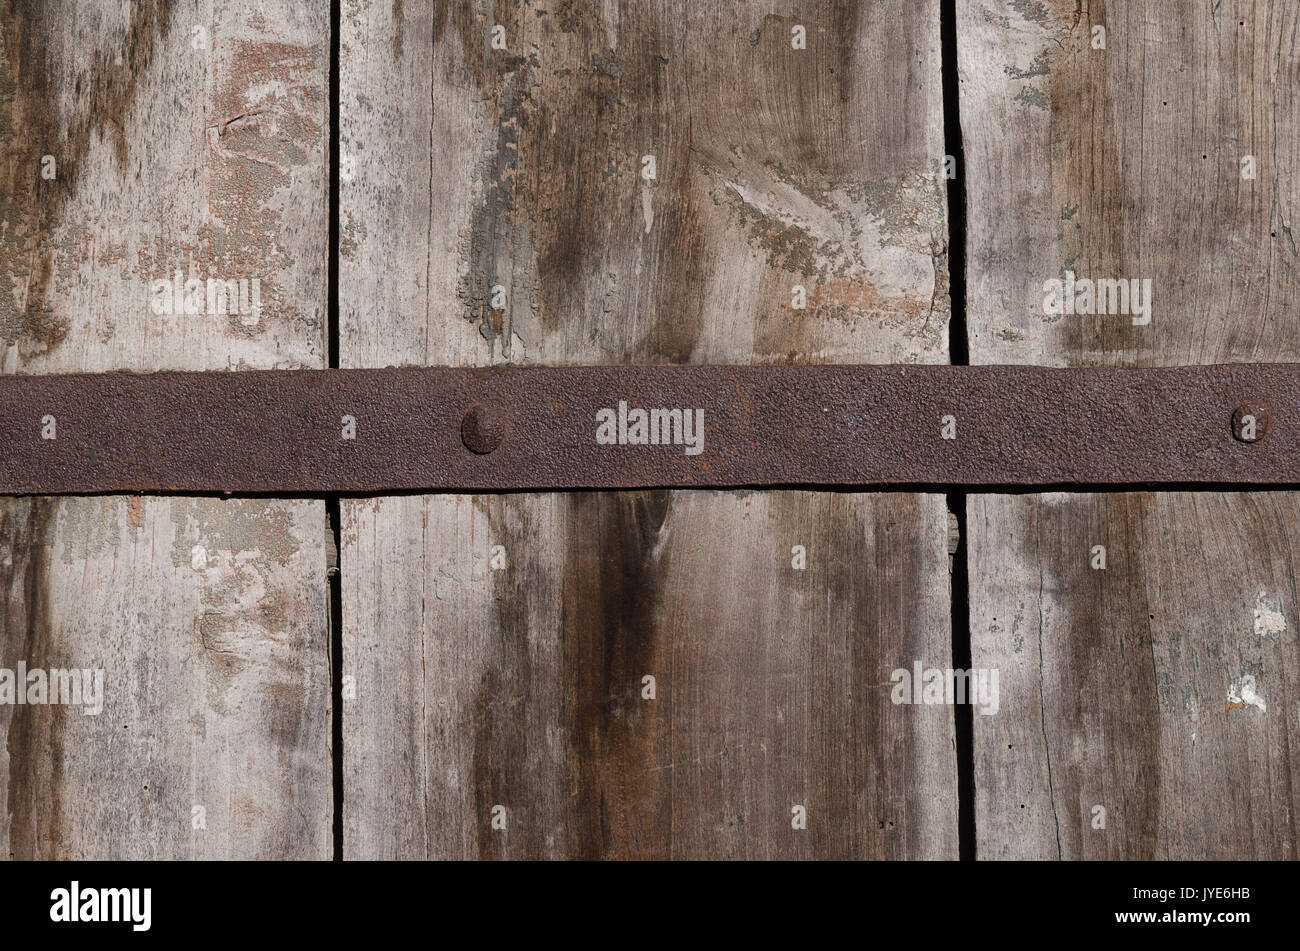 Un vieux rusty metal fastener centré sur de grandes planches de bois, une texture, une photo couleur horizontal. Banque D'Images